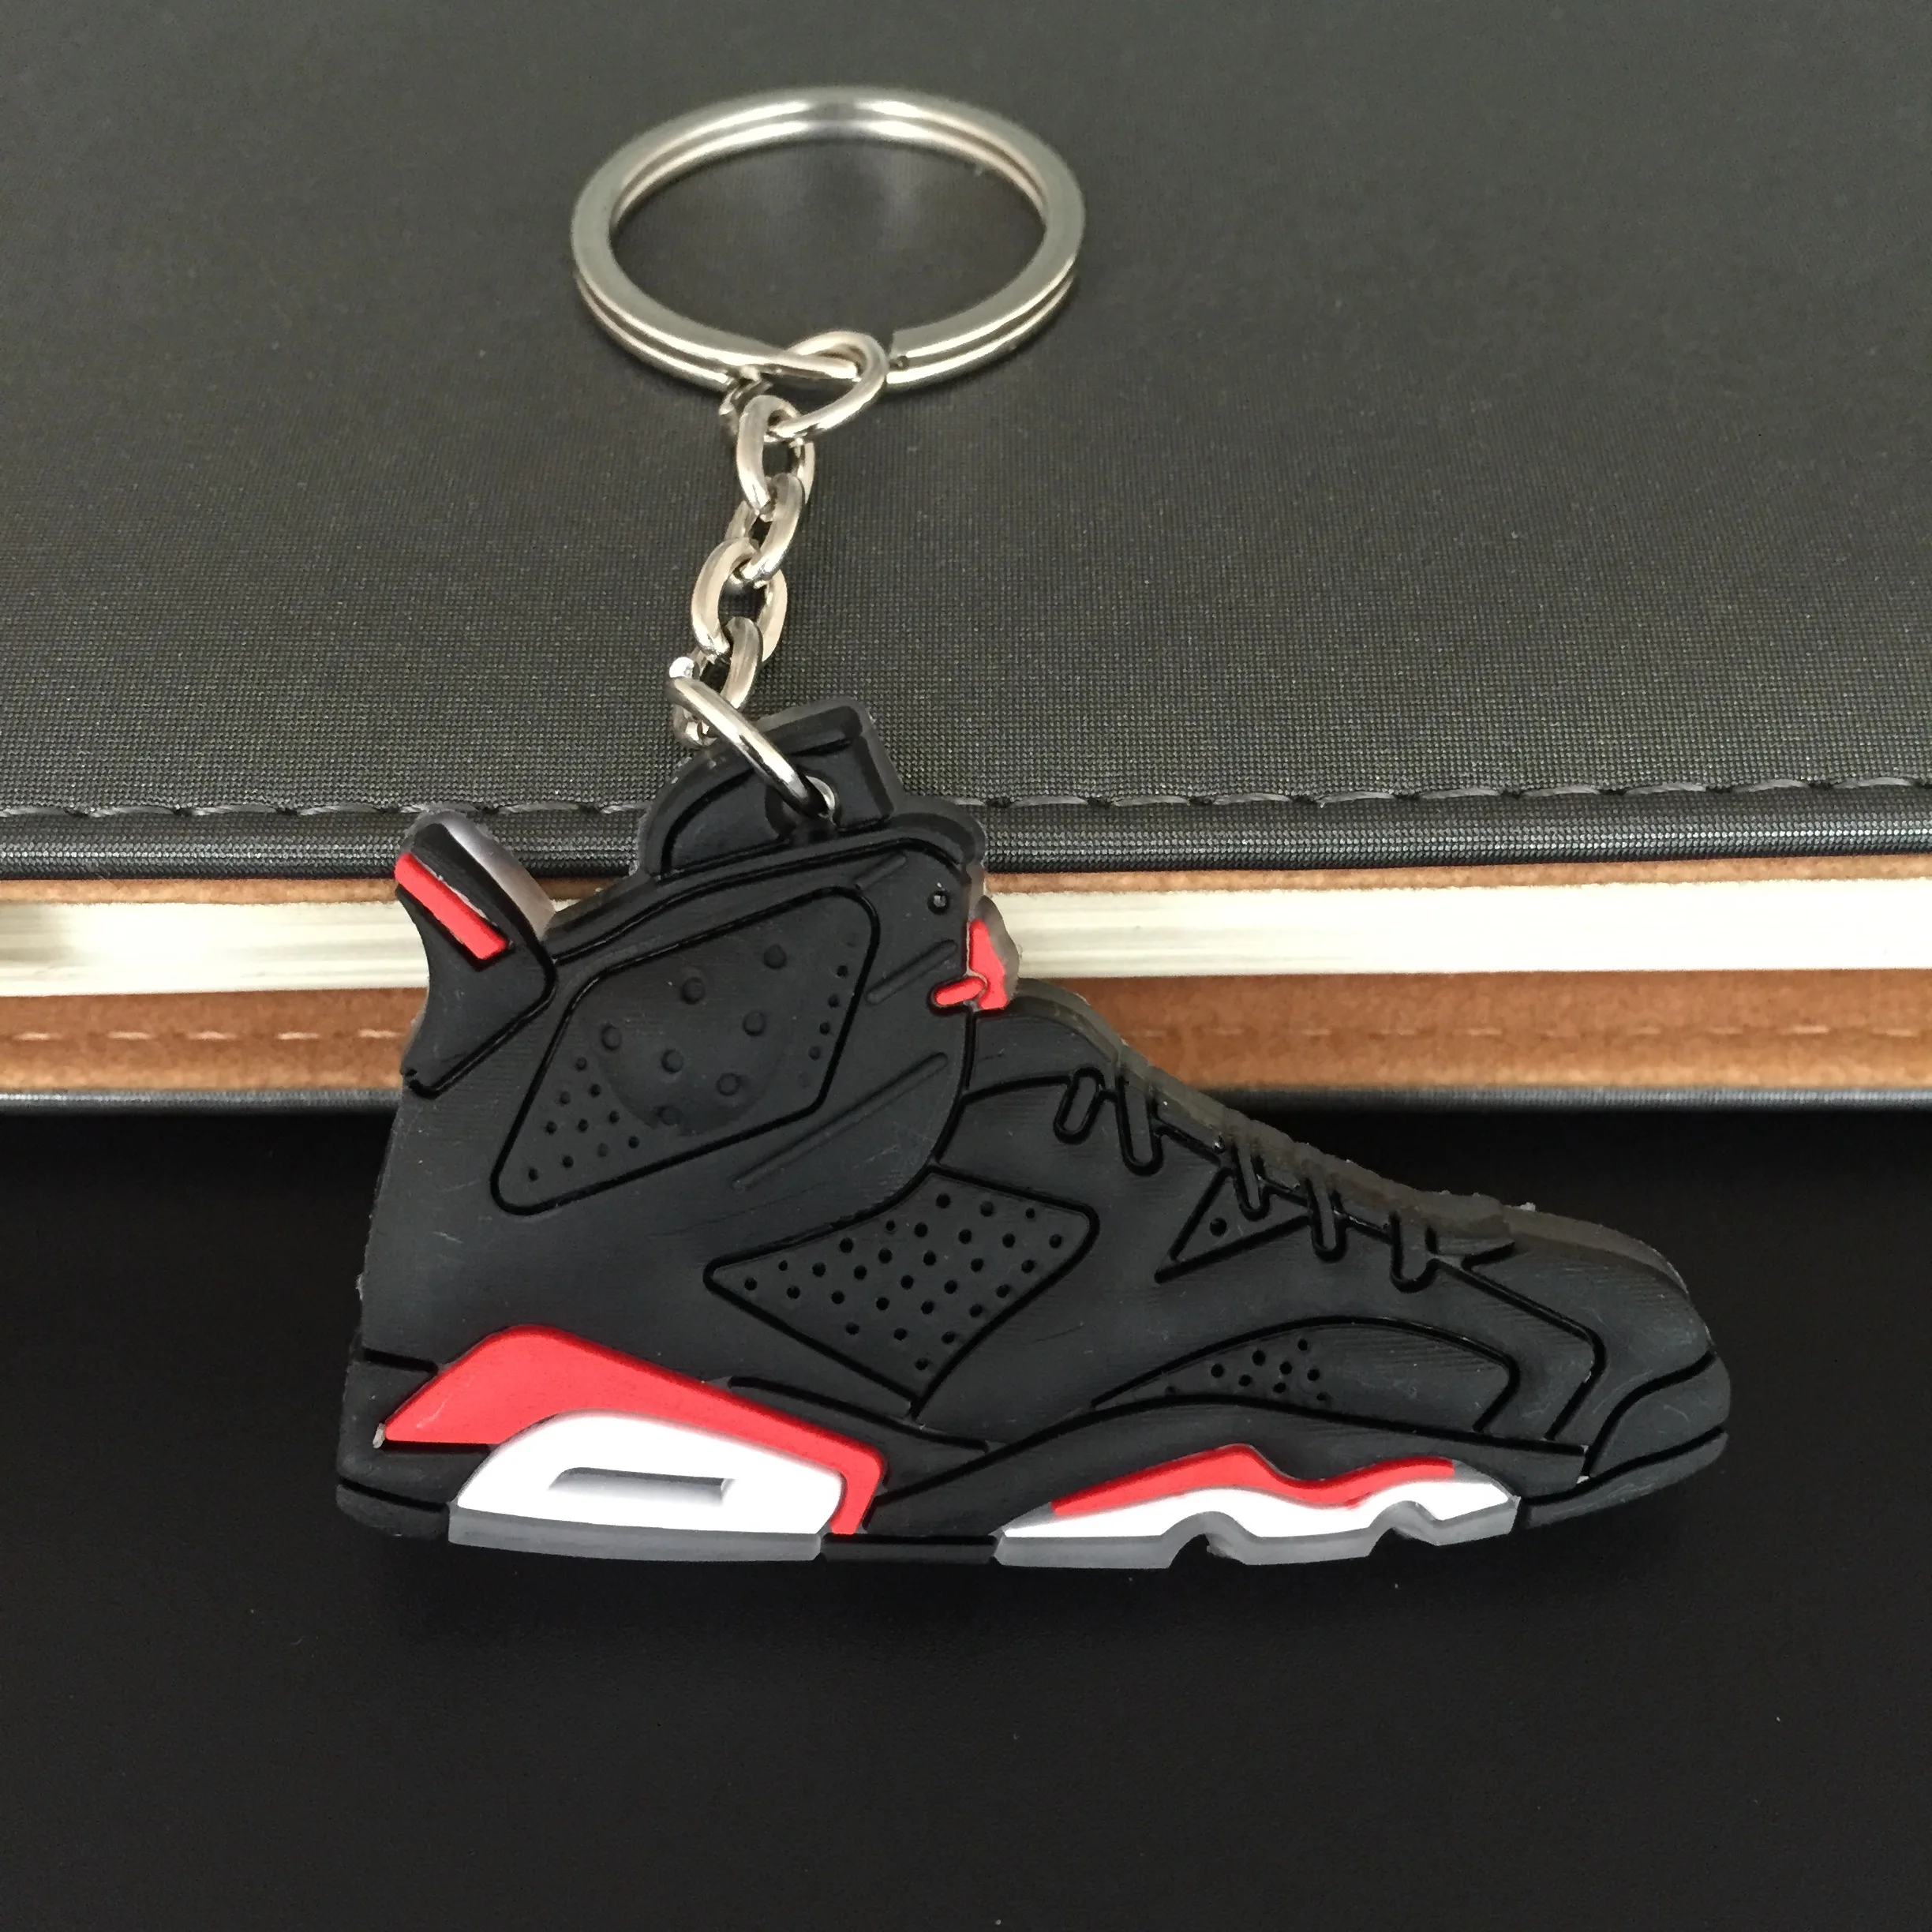 

Jordan sneaker 7s rubber key chain